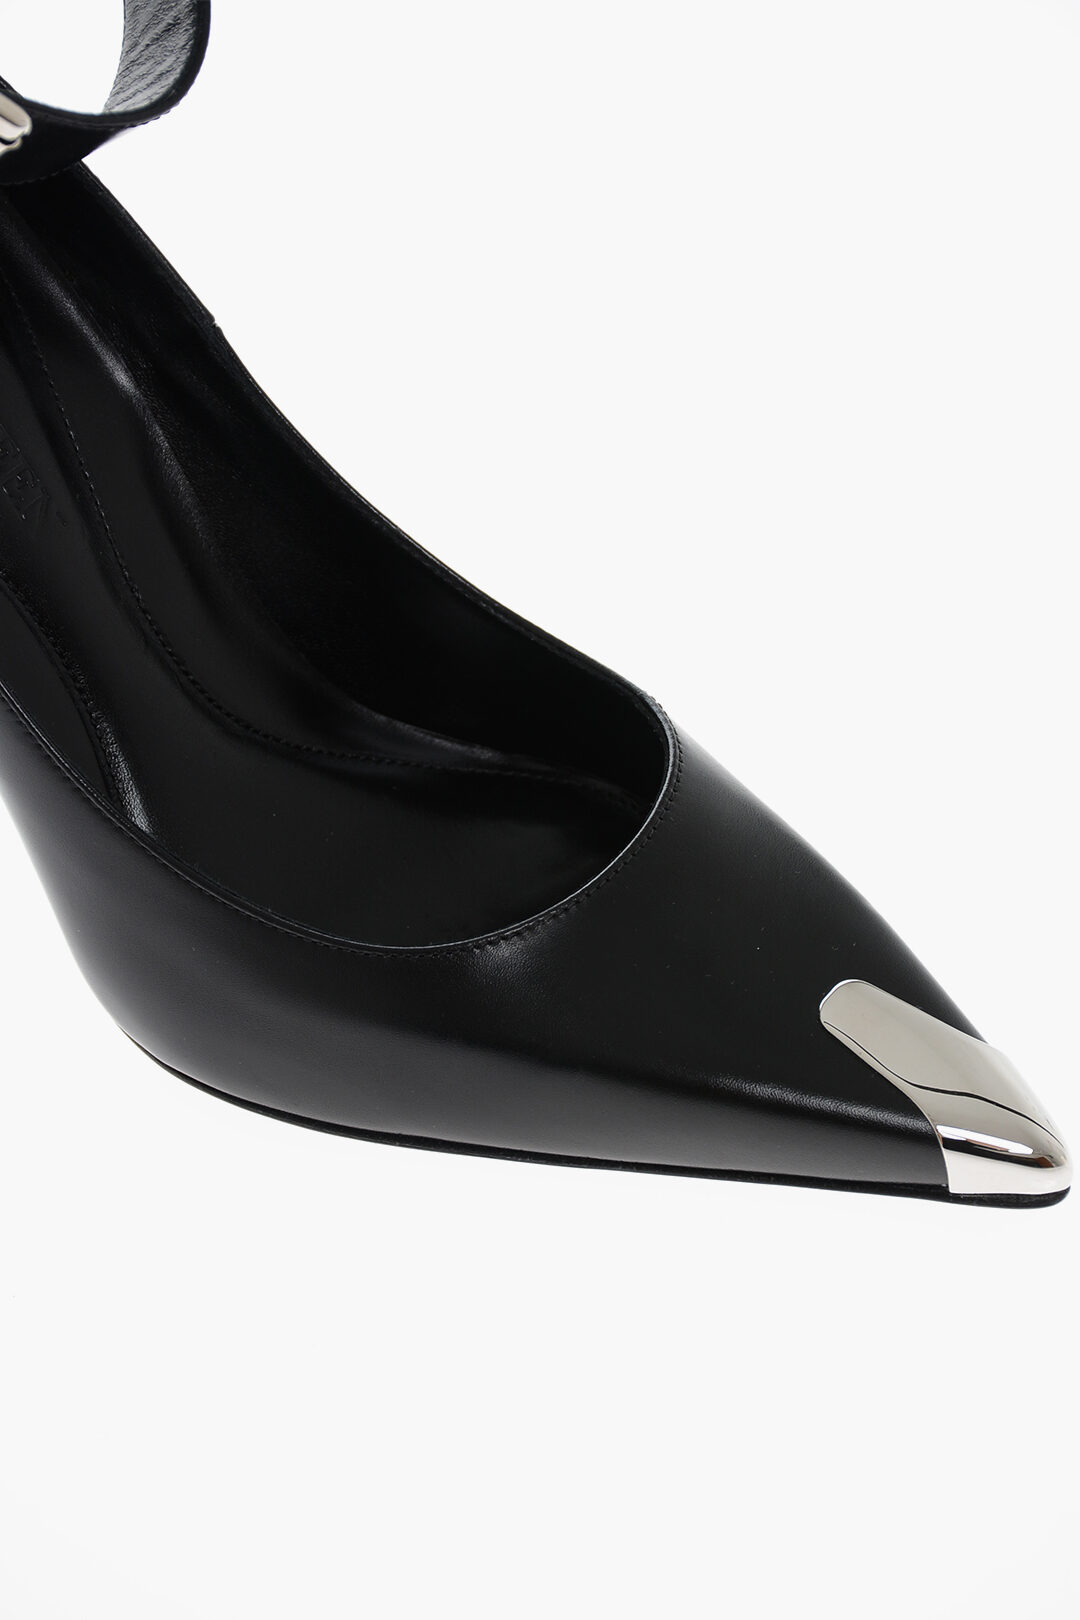 Sorbern Black Shiny Ankle Straps Unisex Pumps Extrem High Heels Thick  Platform Ladies Shoes Size 43 Ultra High Platform HeelsSorbern#174;Official